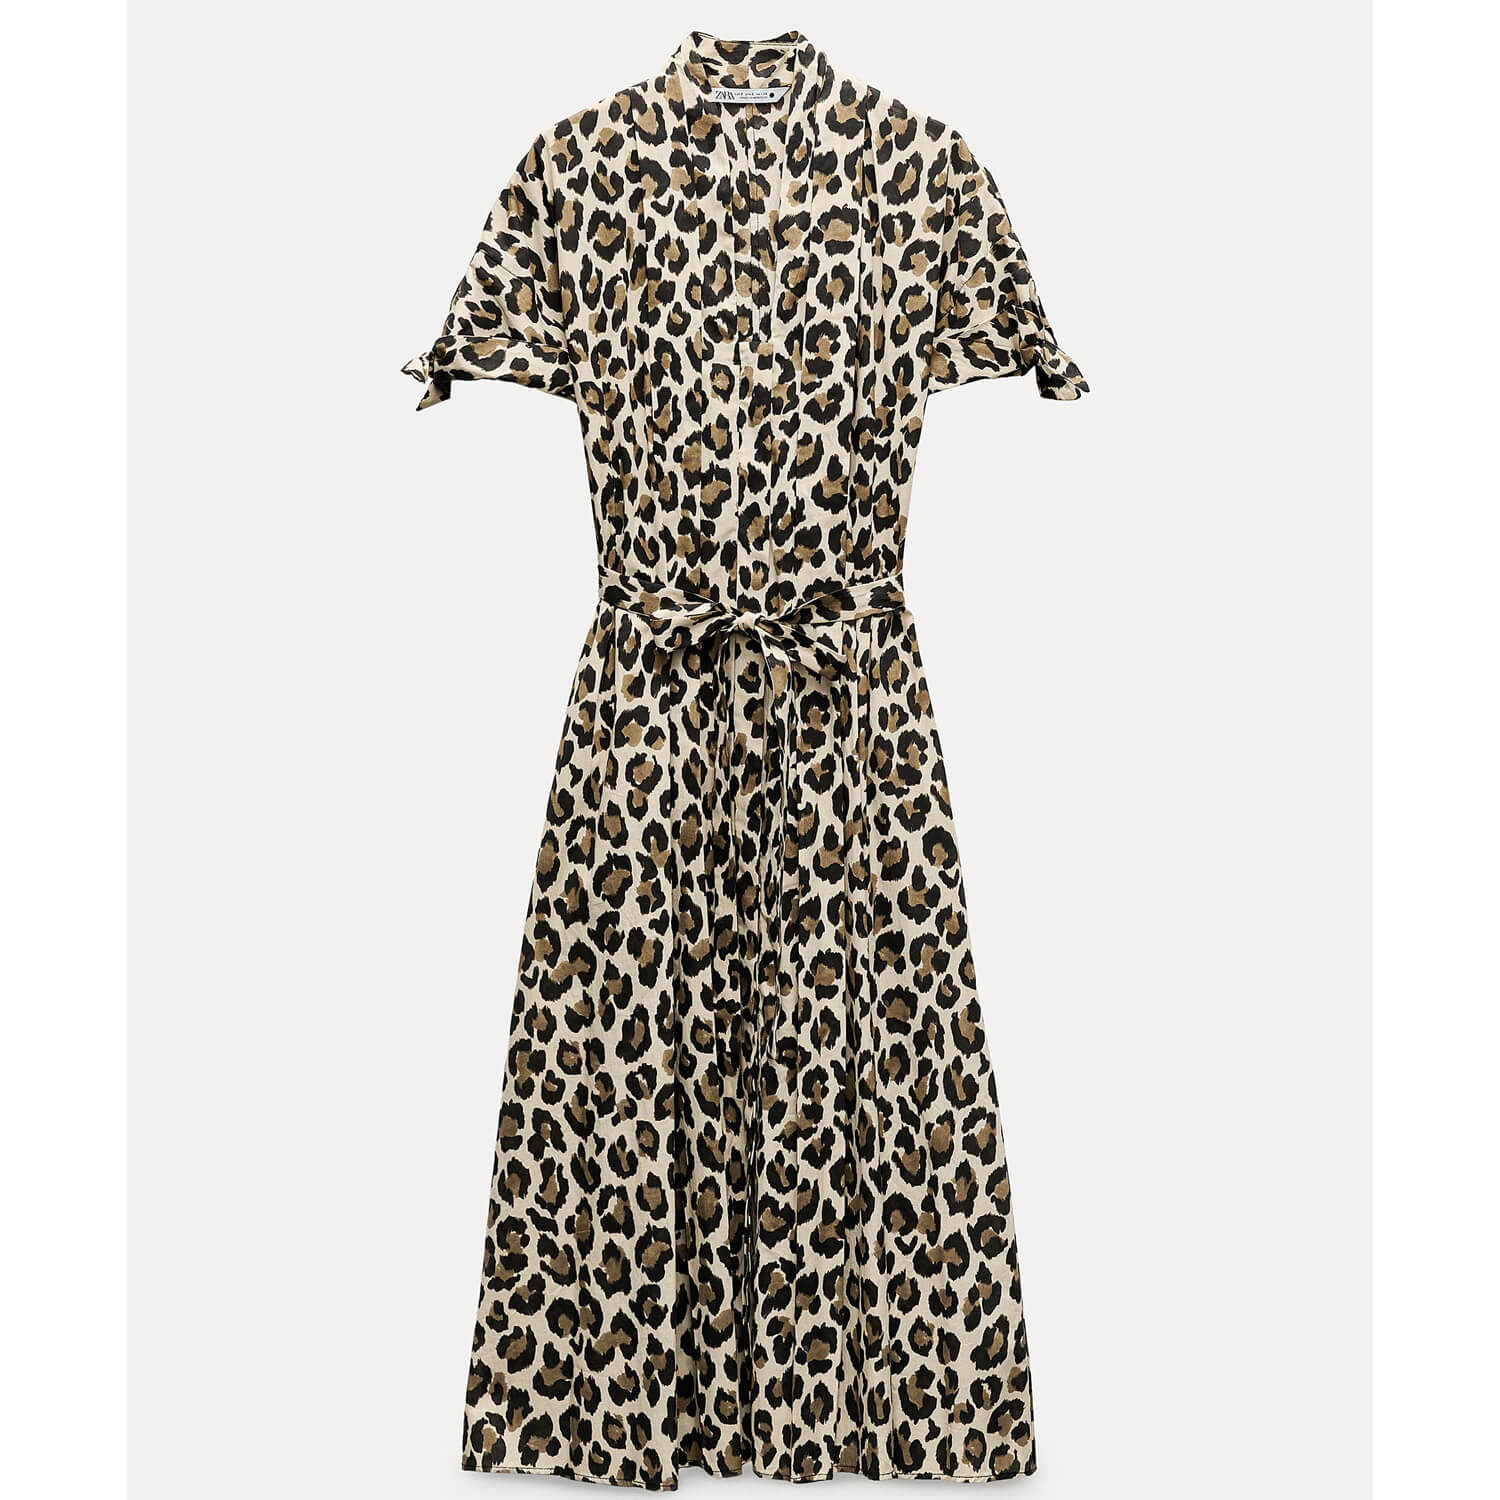 Платье-рубашка Zara ZW Collection Animal Print, коричневый платье zara satin leopard animal print коричневый мультиколор